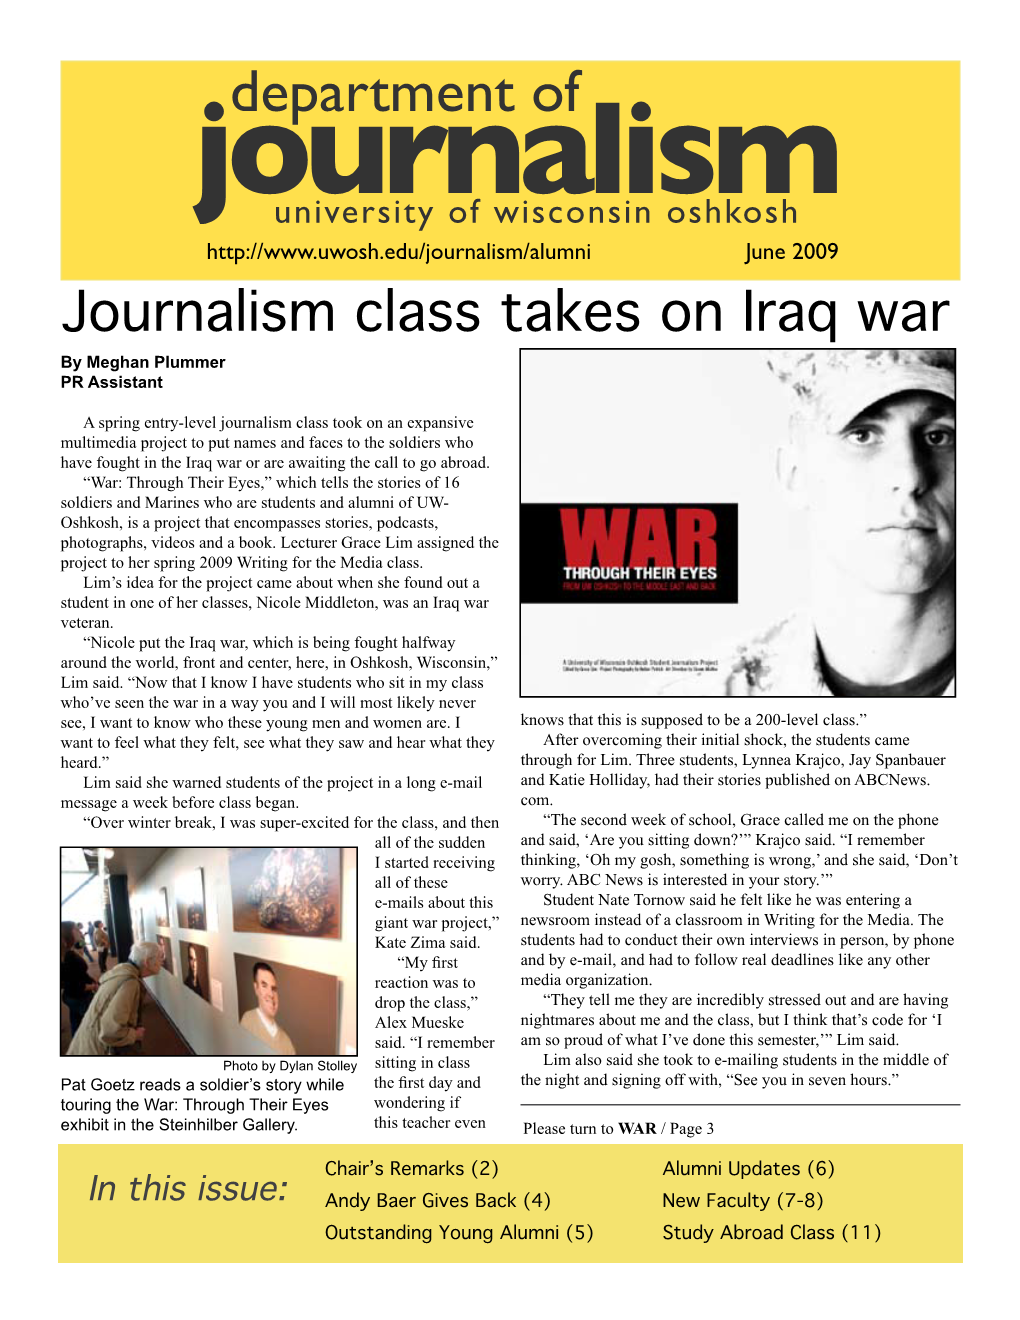 2009 Journalism Class Takes on Iraq War by Meghan Plummer PR Assistant